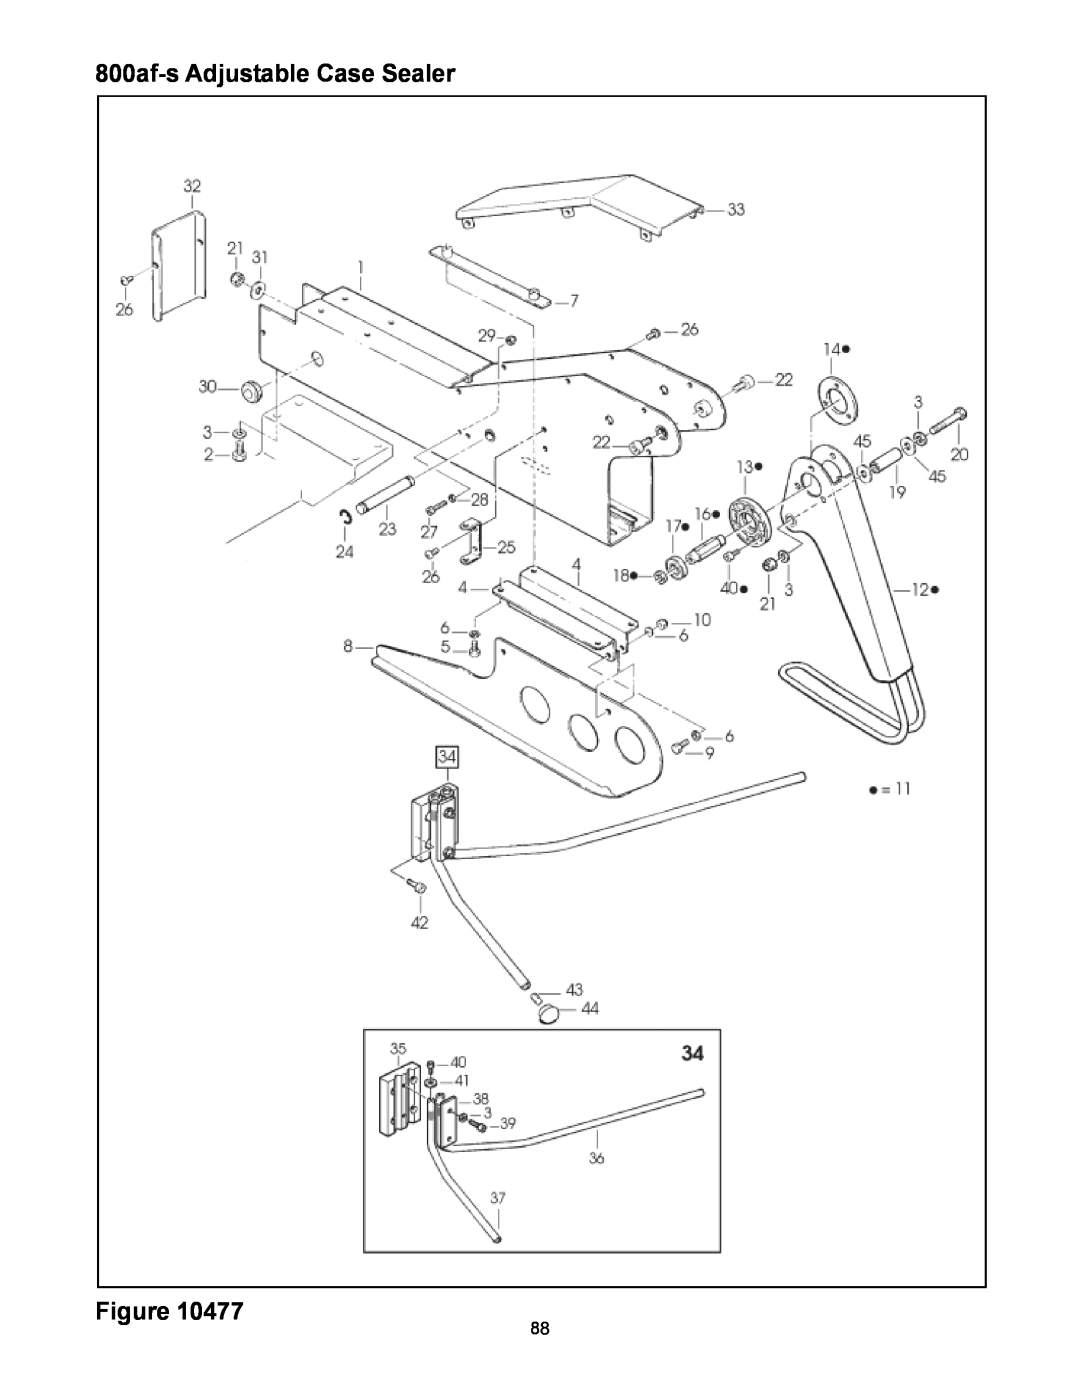 3M manual 800af-sAdjustable Case Sealer, Figure 